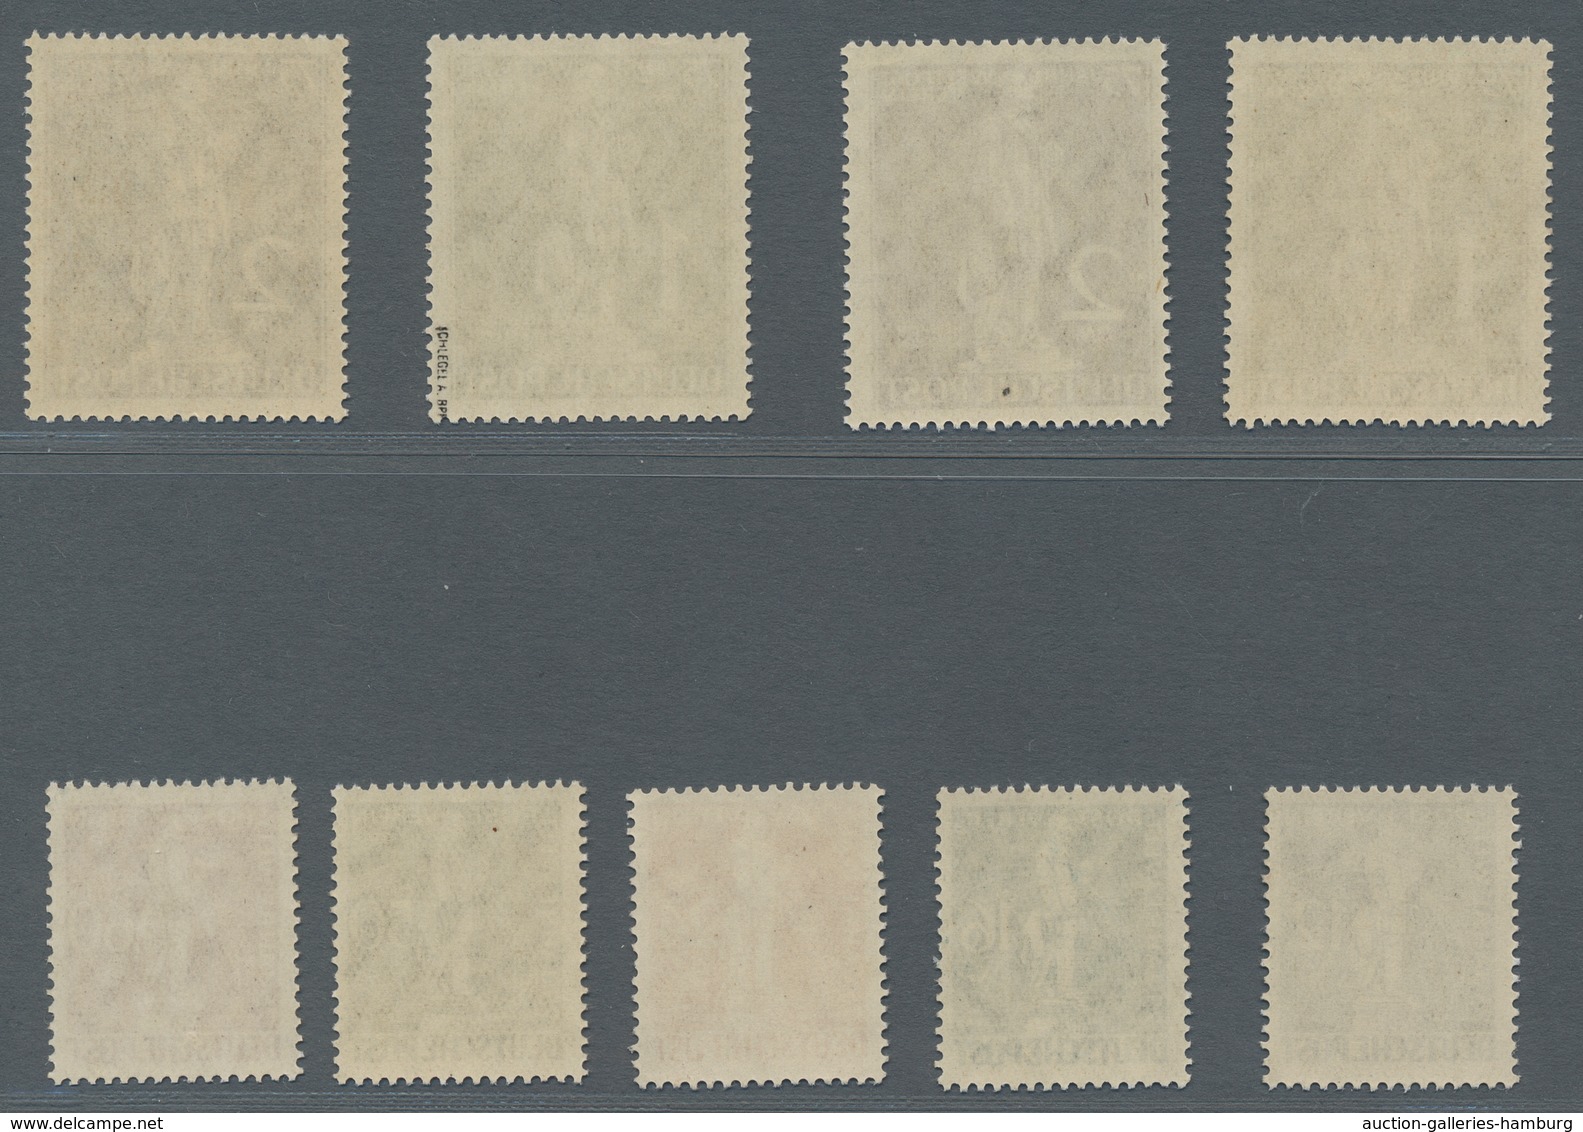 Berlin: 1949, Weltpostverein, Zwei Postfrische Sätze, Einwandfrei, Farbfrisch, Mi. 1500,00 - Unused Stamps